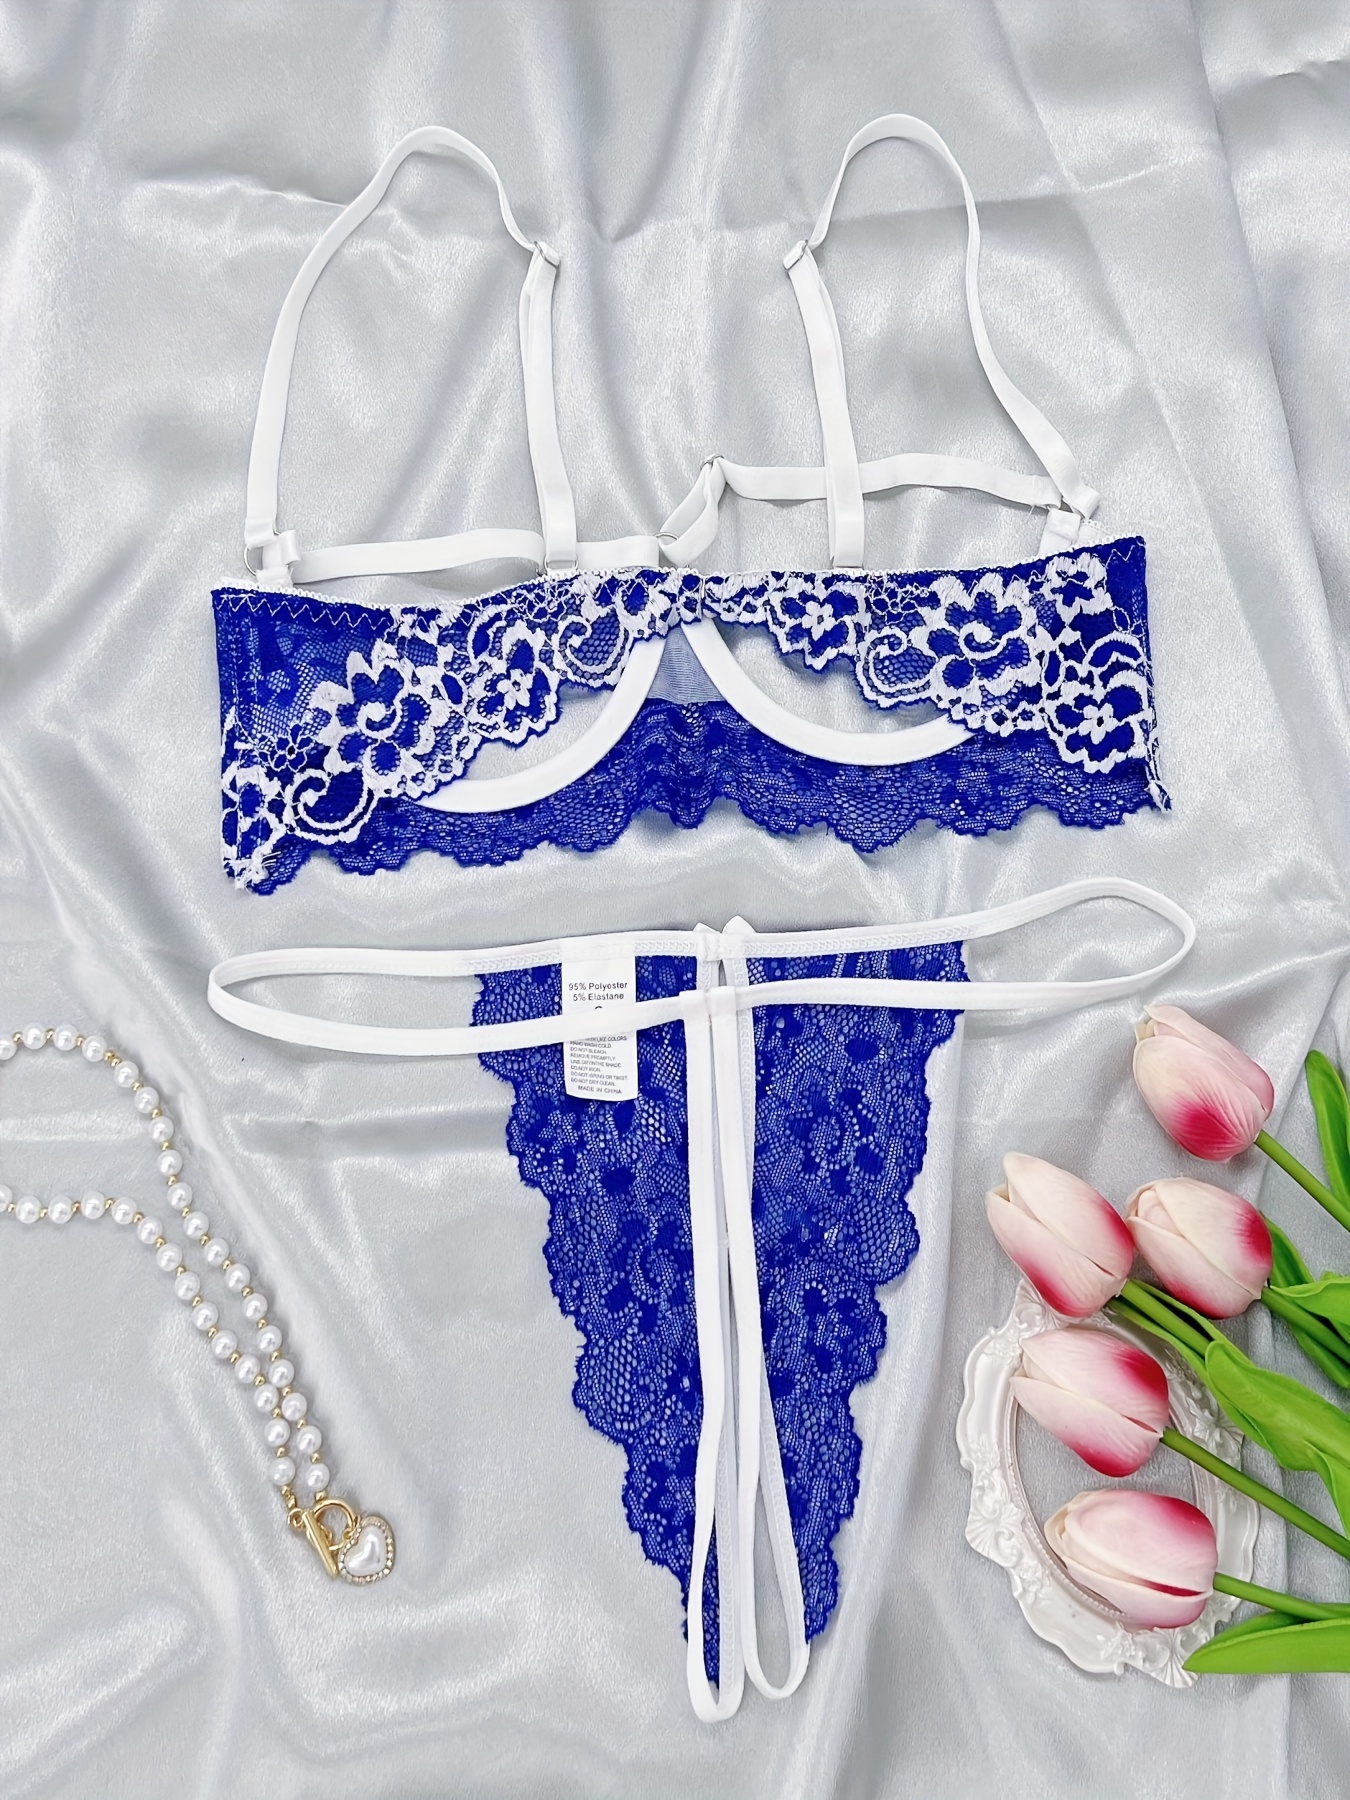 Brazilian Briefs Women S Lace Lingerie Underwear Open Open Erotic